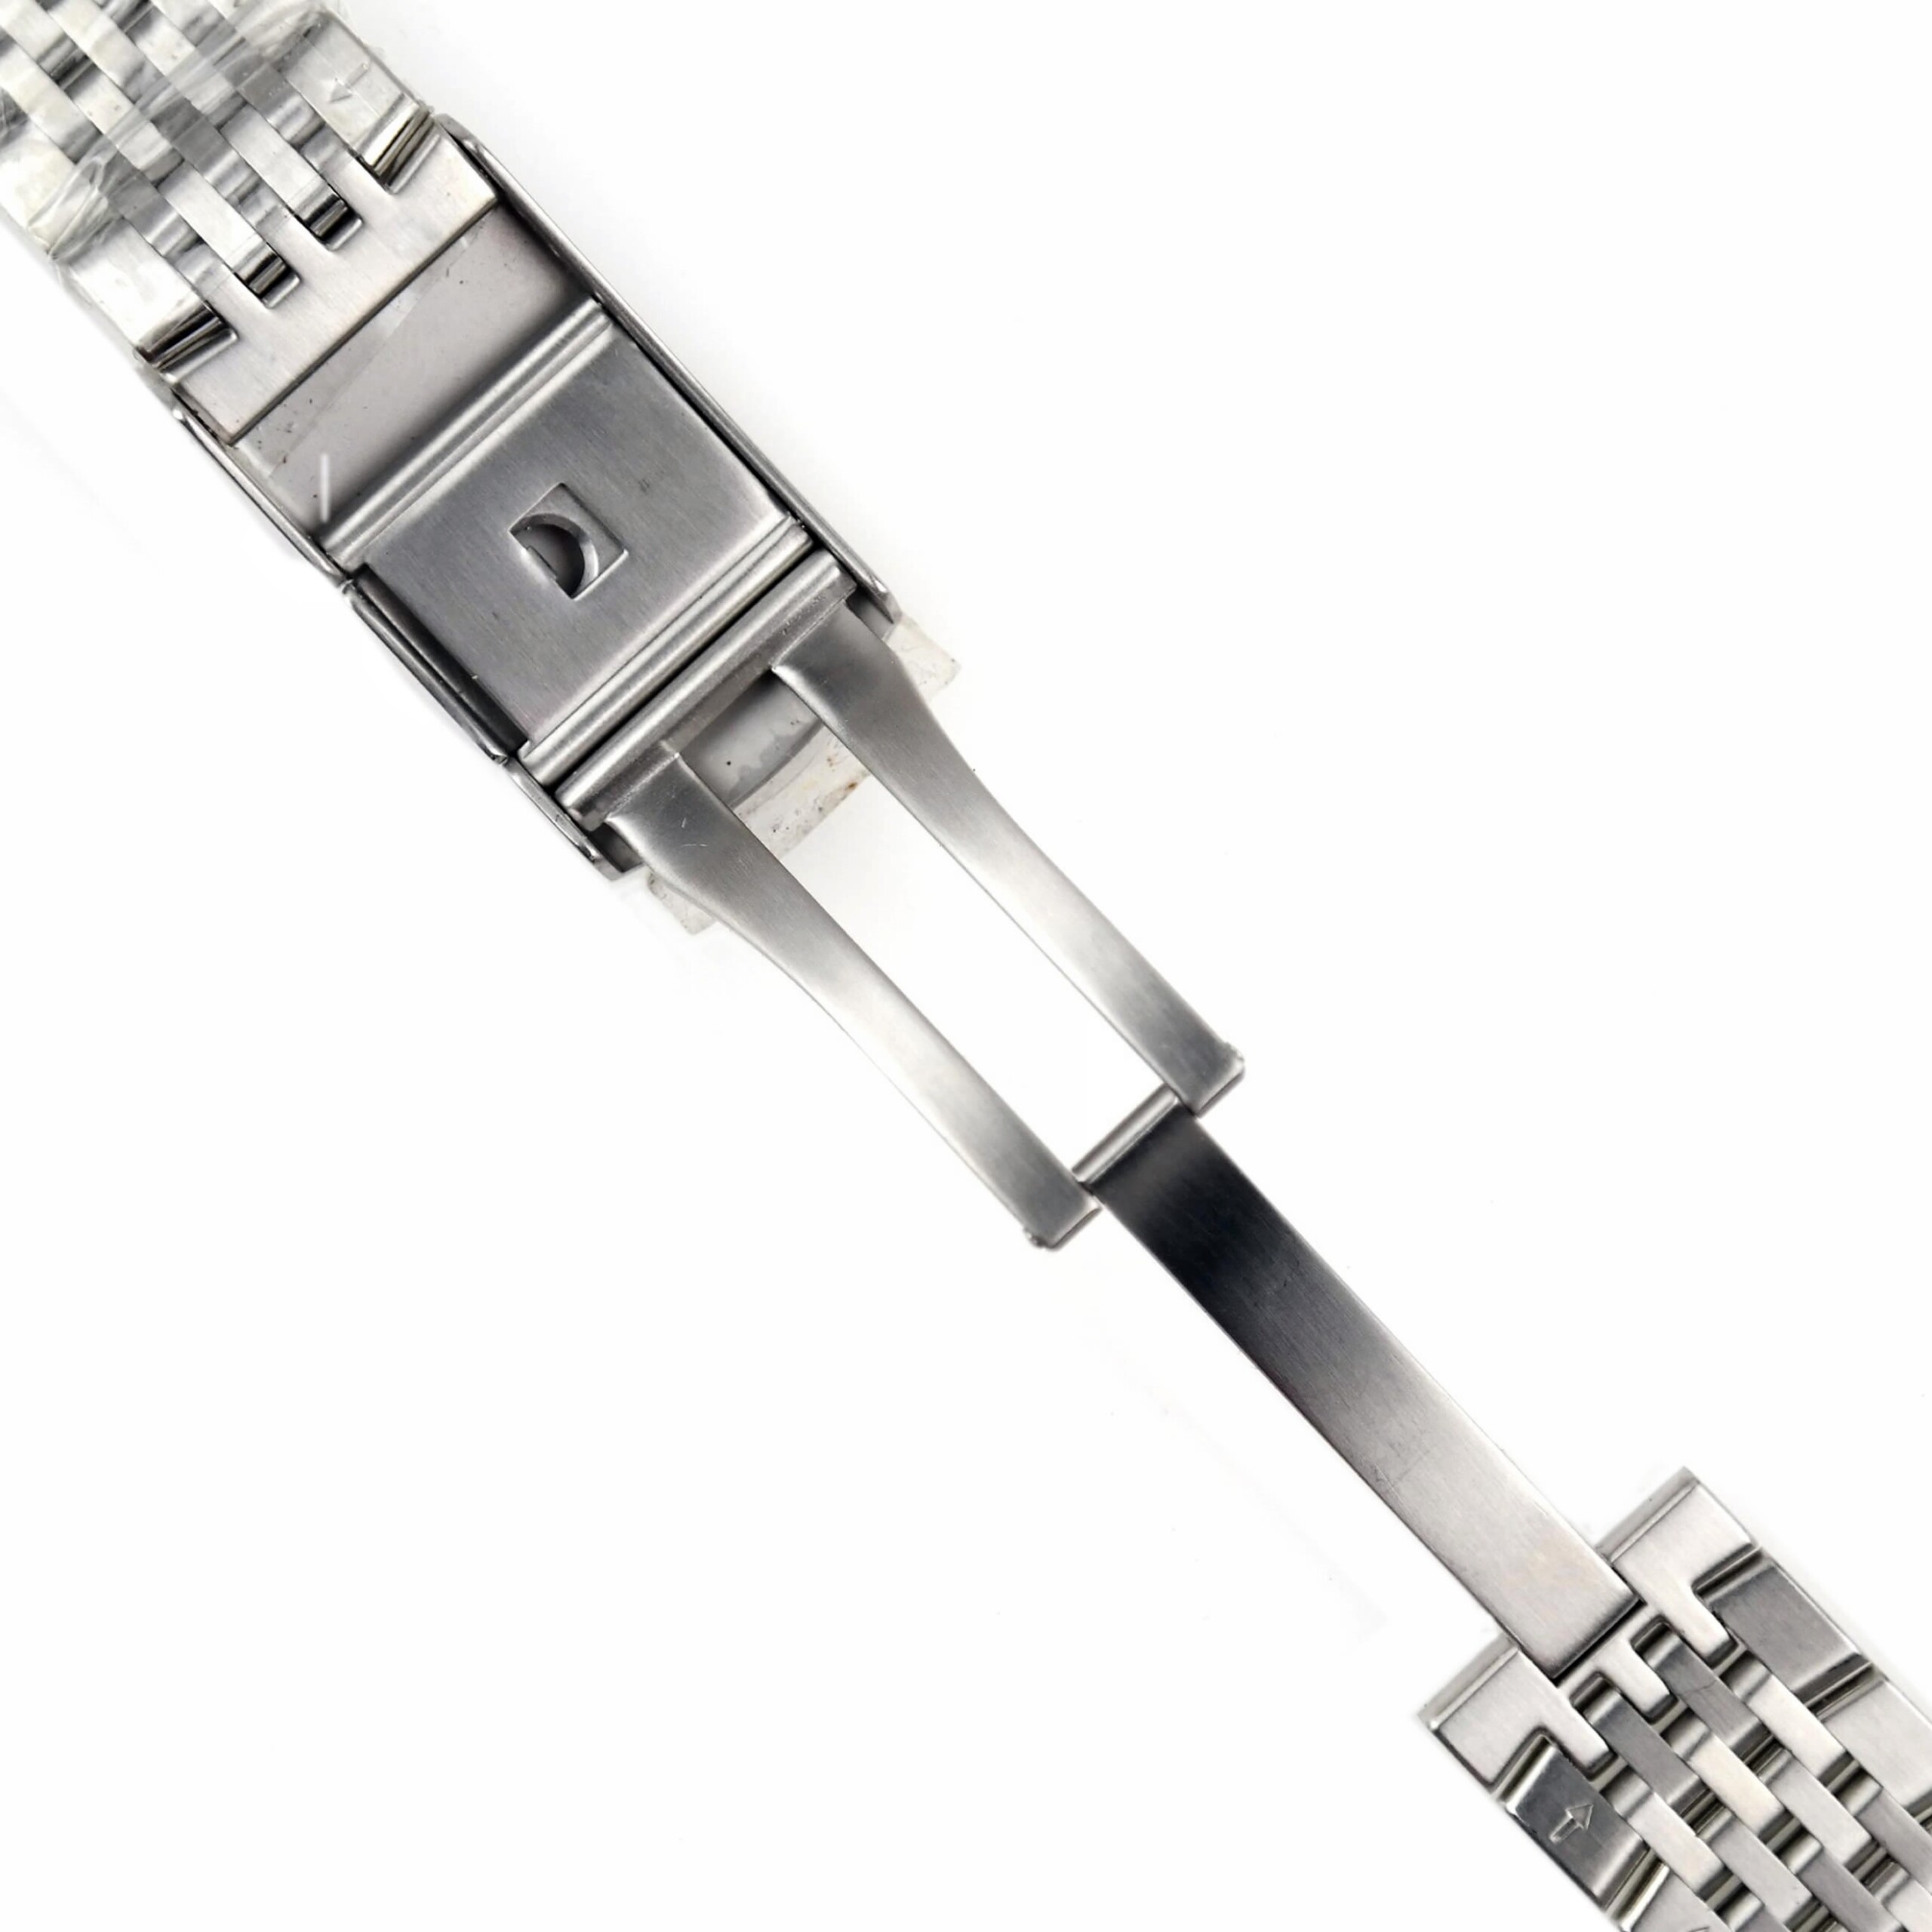 ORIS - Stainless Steel Watch Bracelet - 20 mm - Ref. 07 8 20 76